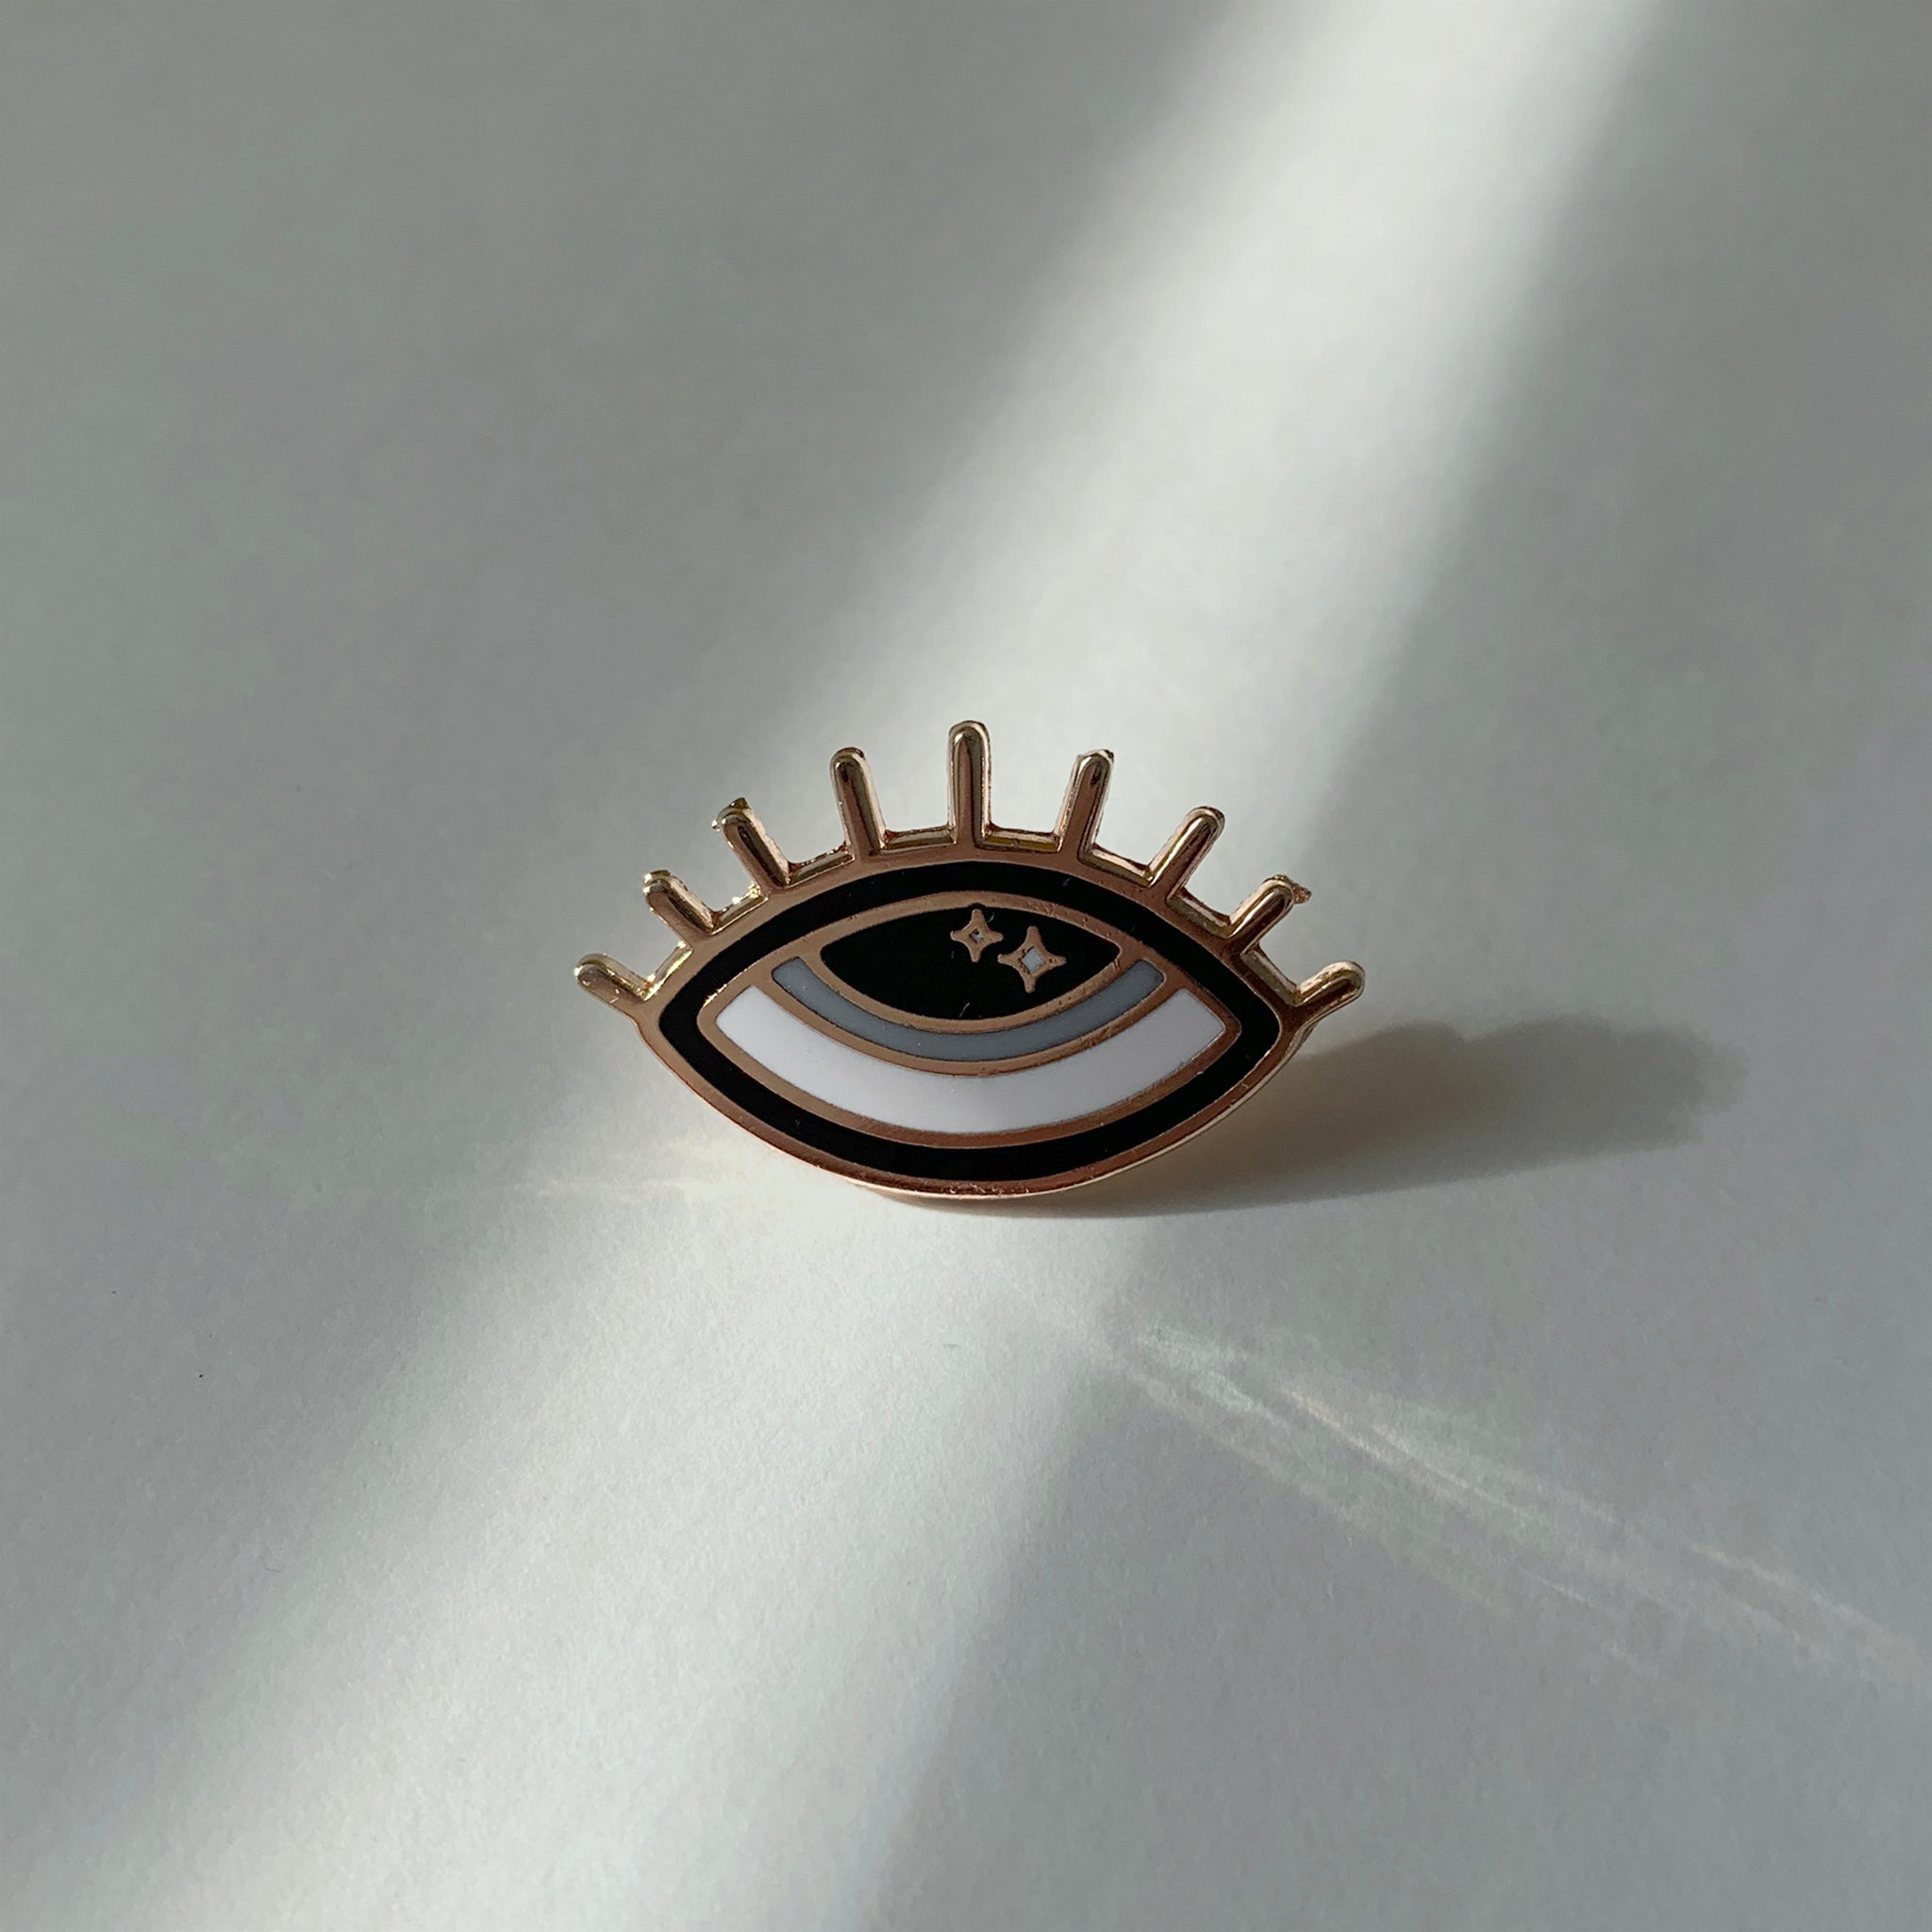 Enamel Pin, "Third Eye in Blue"